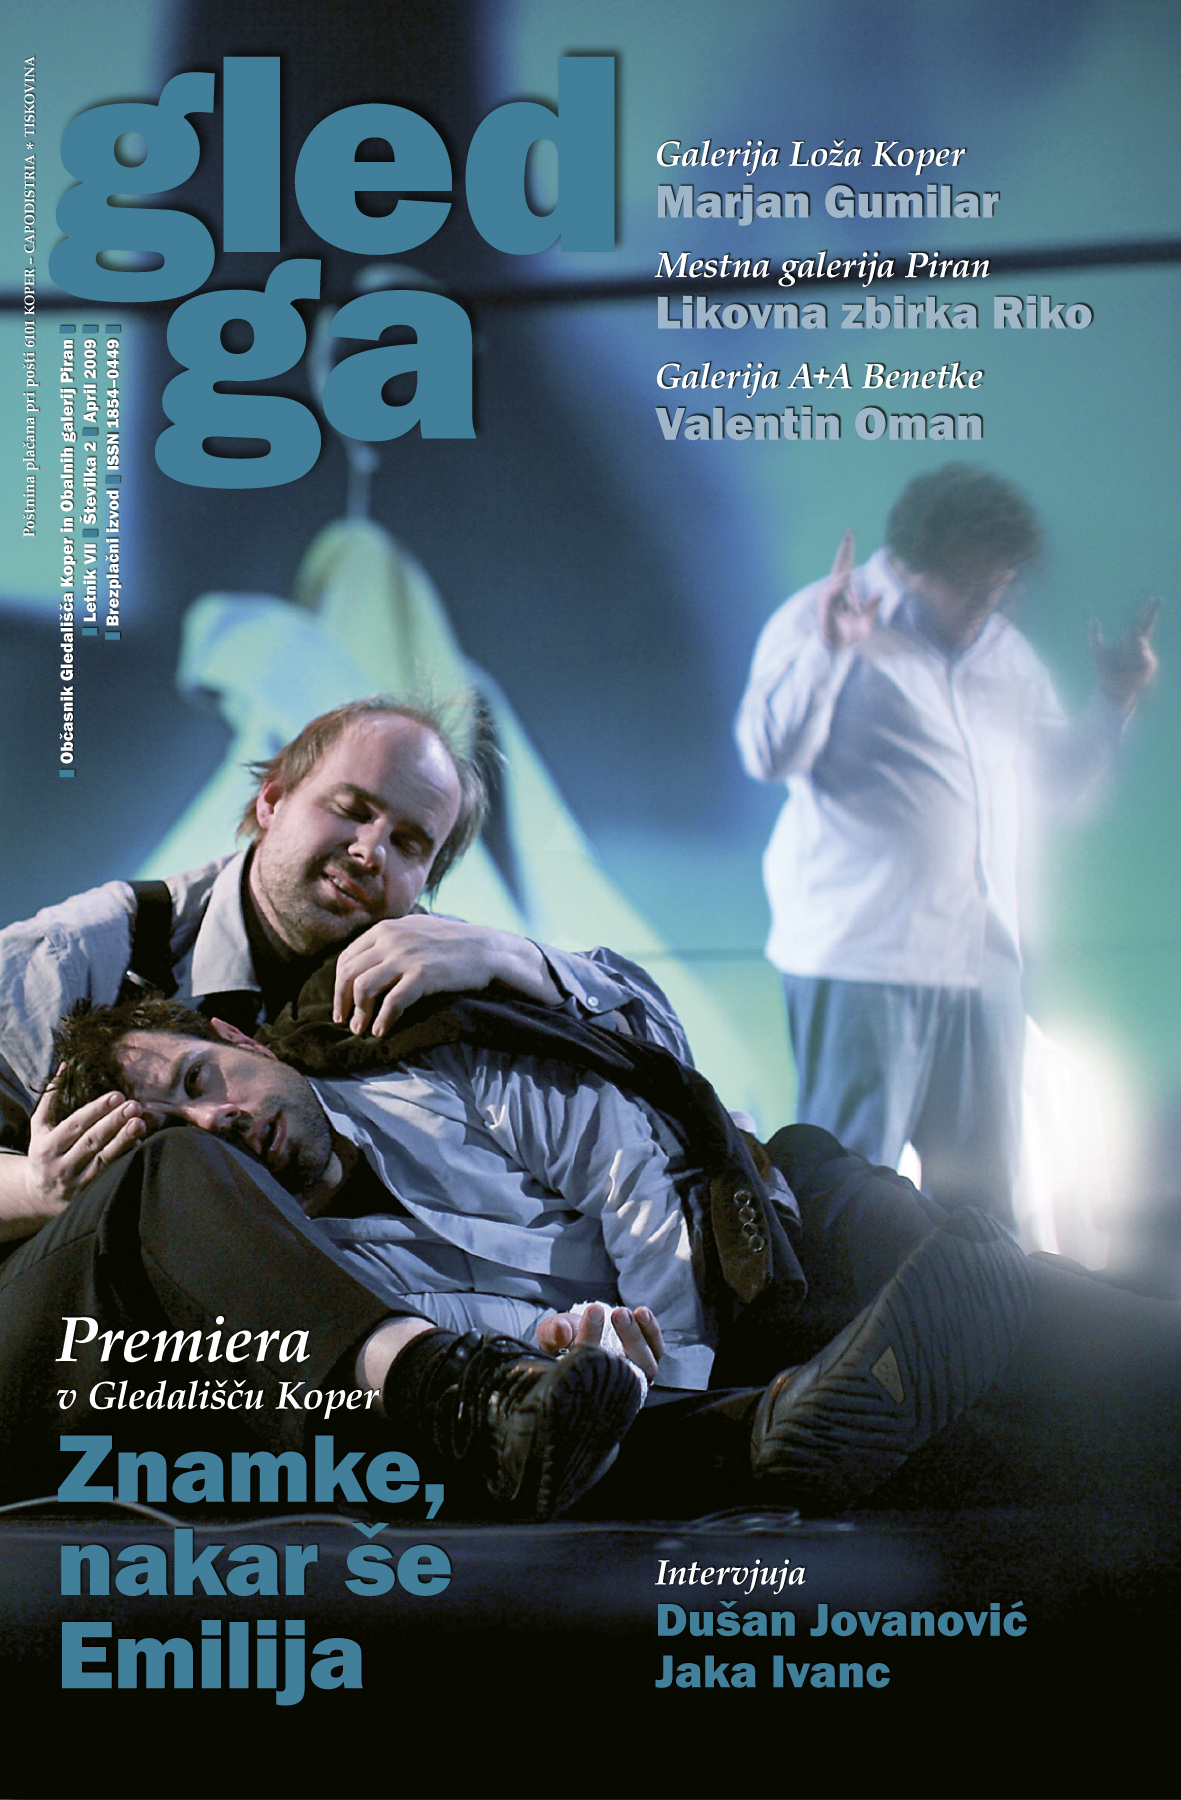 Gledga Magazine 2009 no 02.jpg